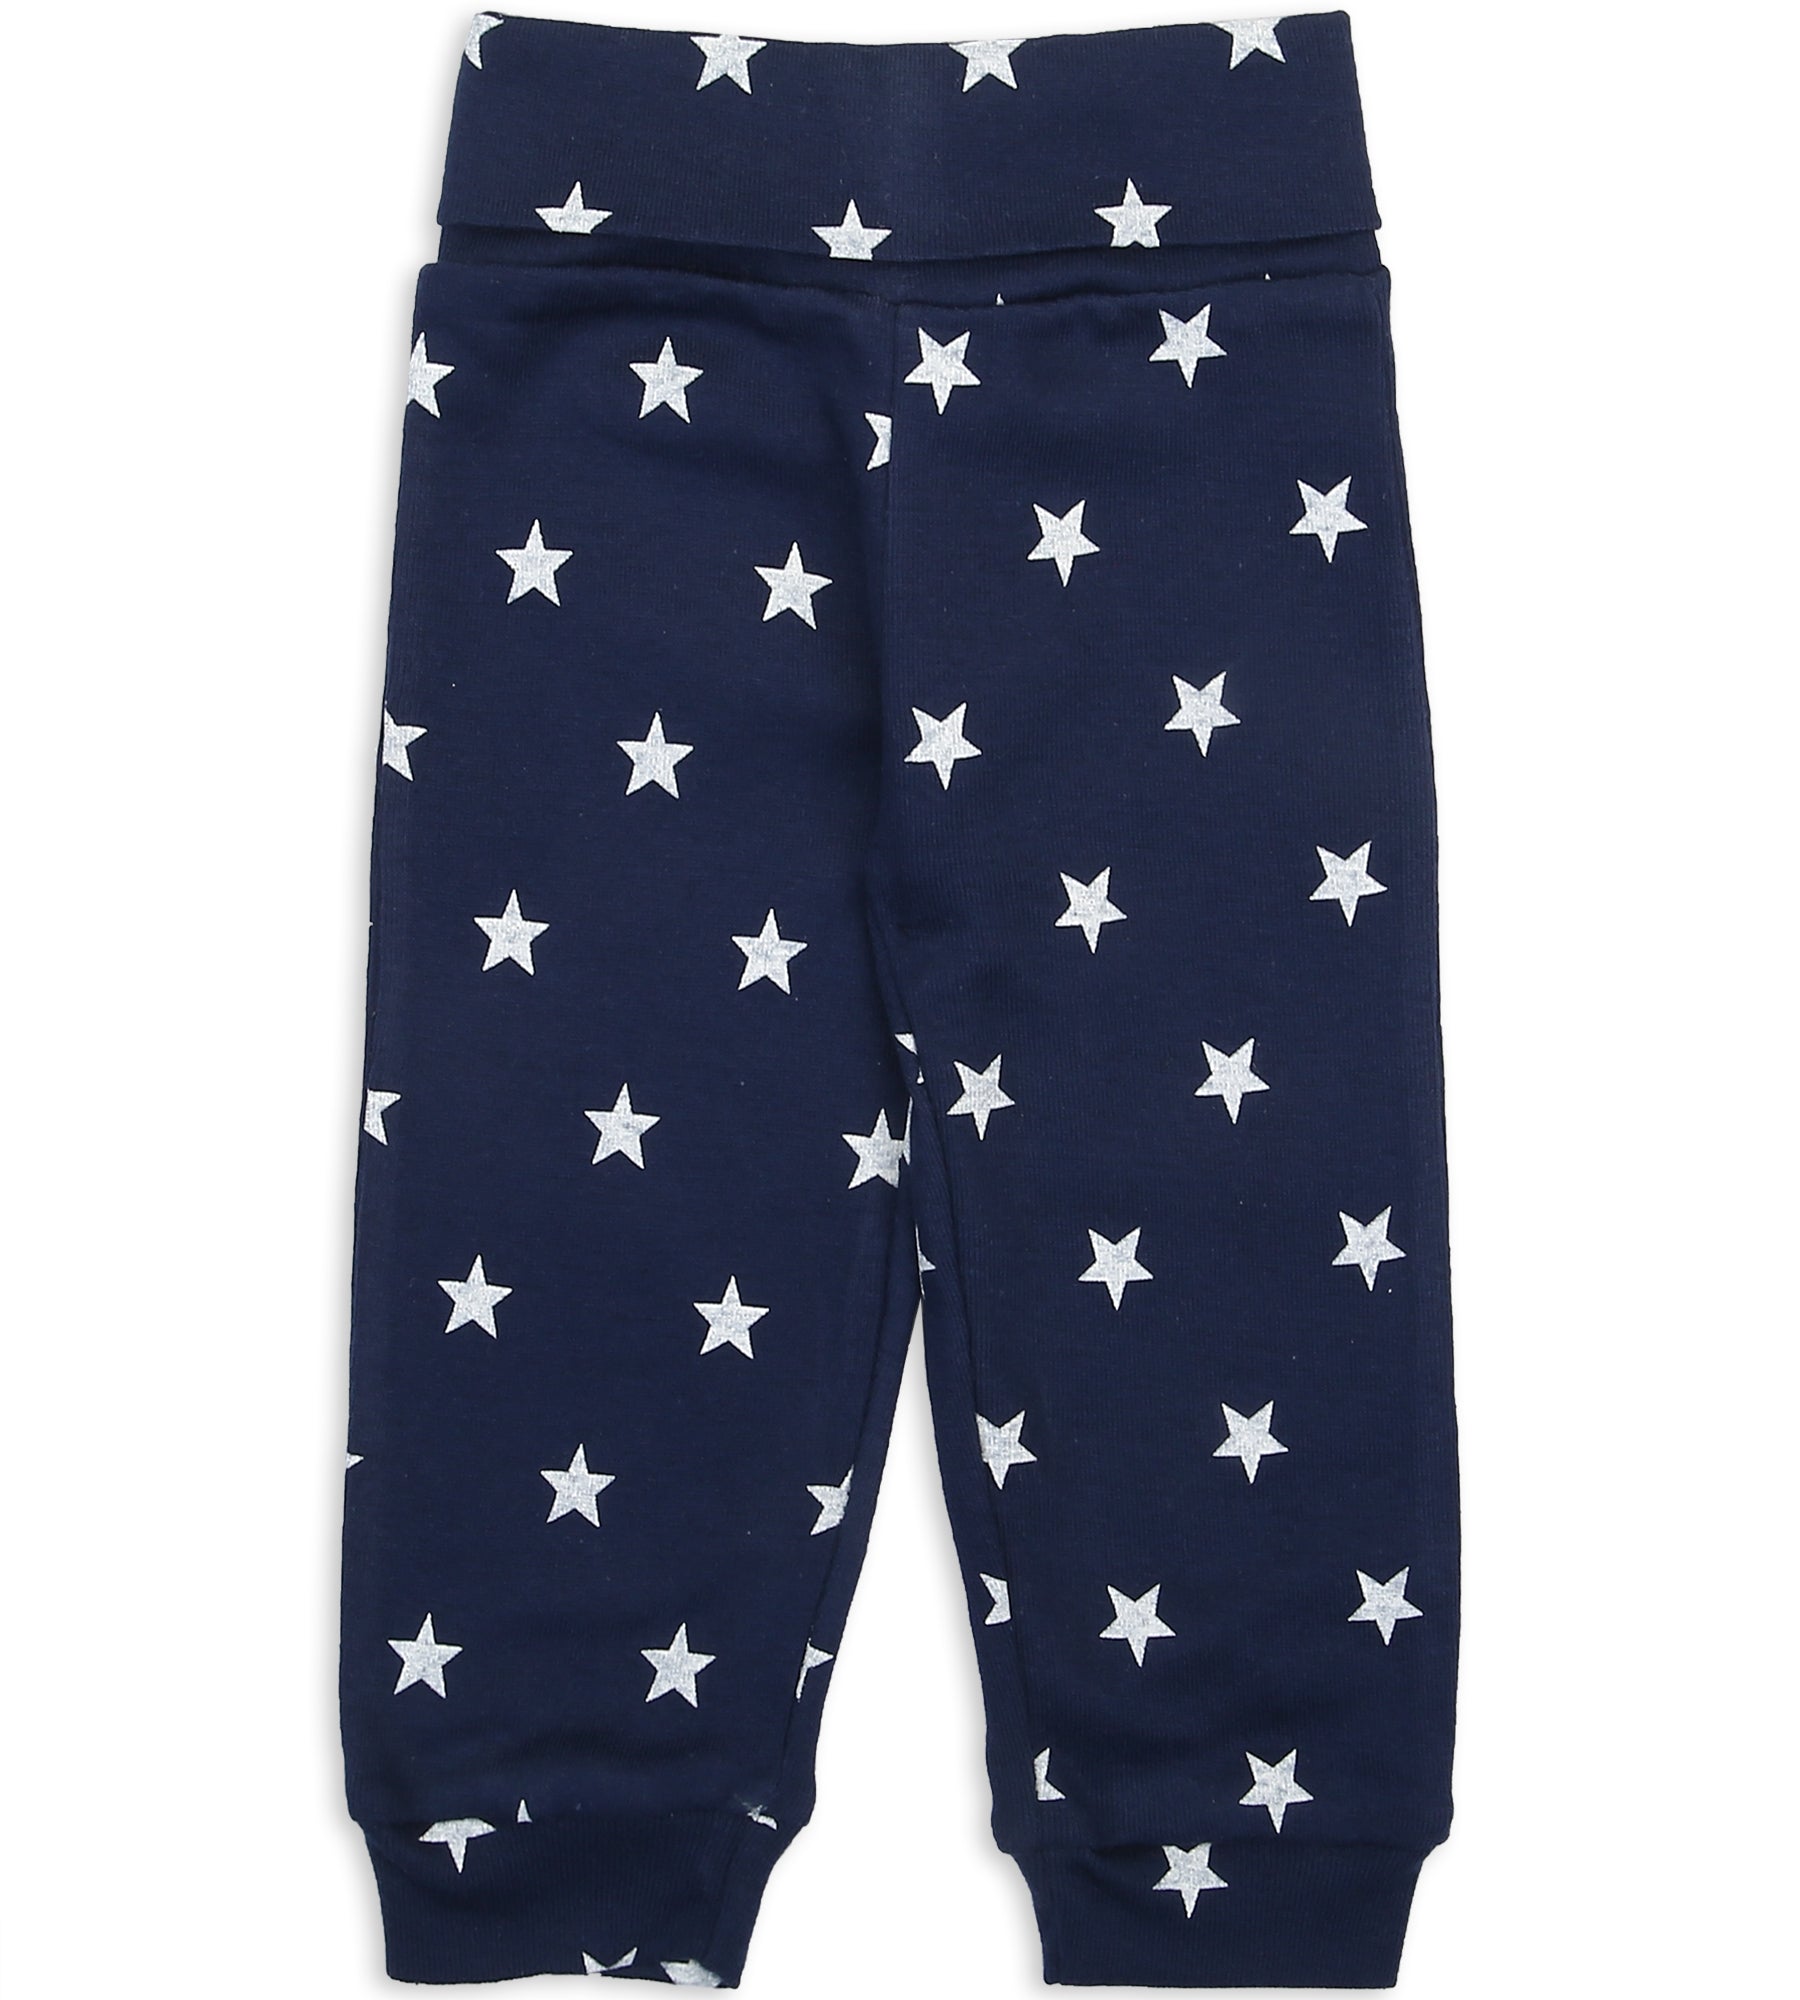 Boys Pajama Pack Of 2 - 0284431